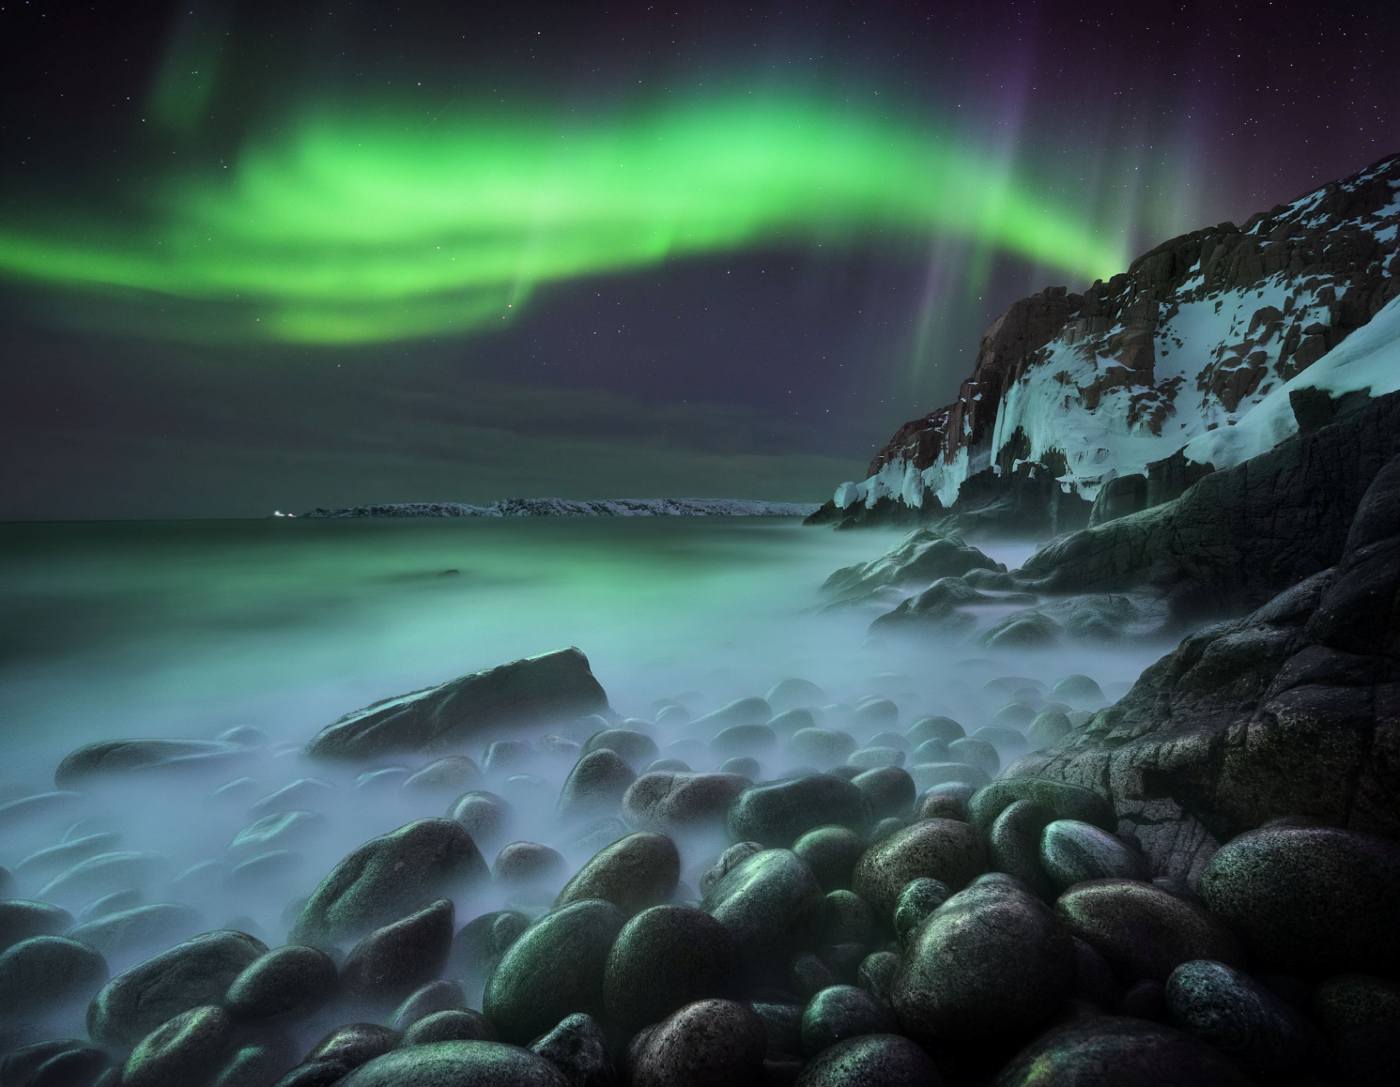 Lihat Pemenang Menakjubkan dari Kompetisi Fotografer Cahaya Utara Tahun Ini